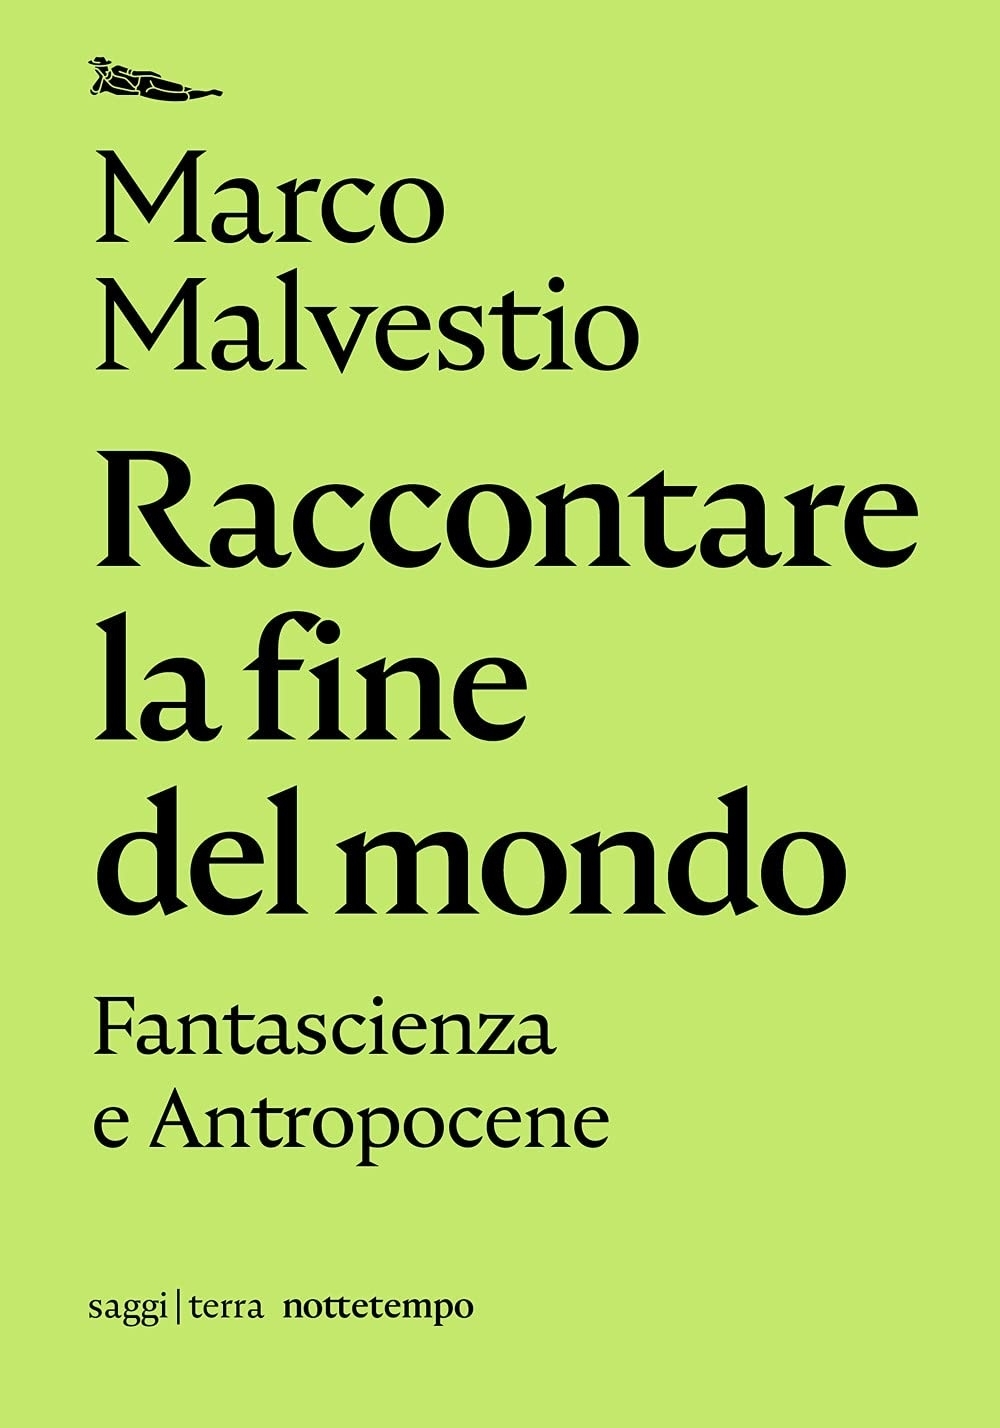 Marco Malvestio – Raccontare la fine del mondo (Nottetempo, Milano 2021)